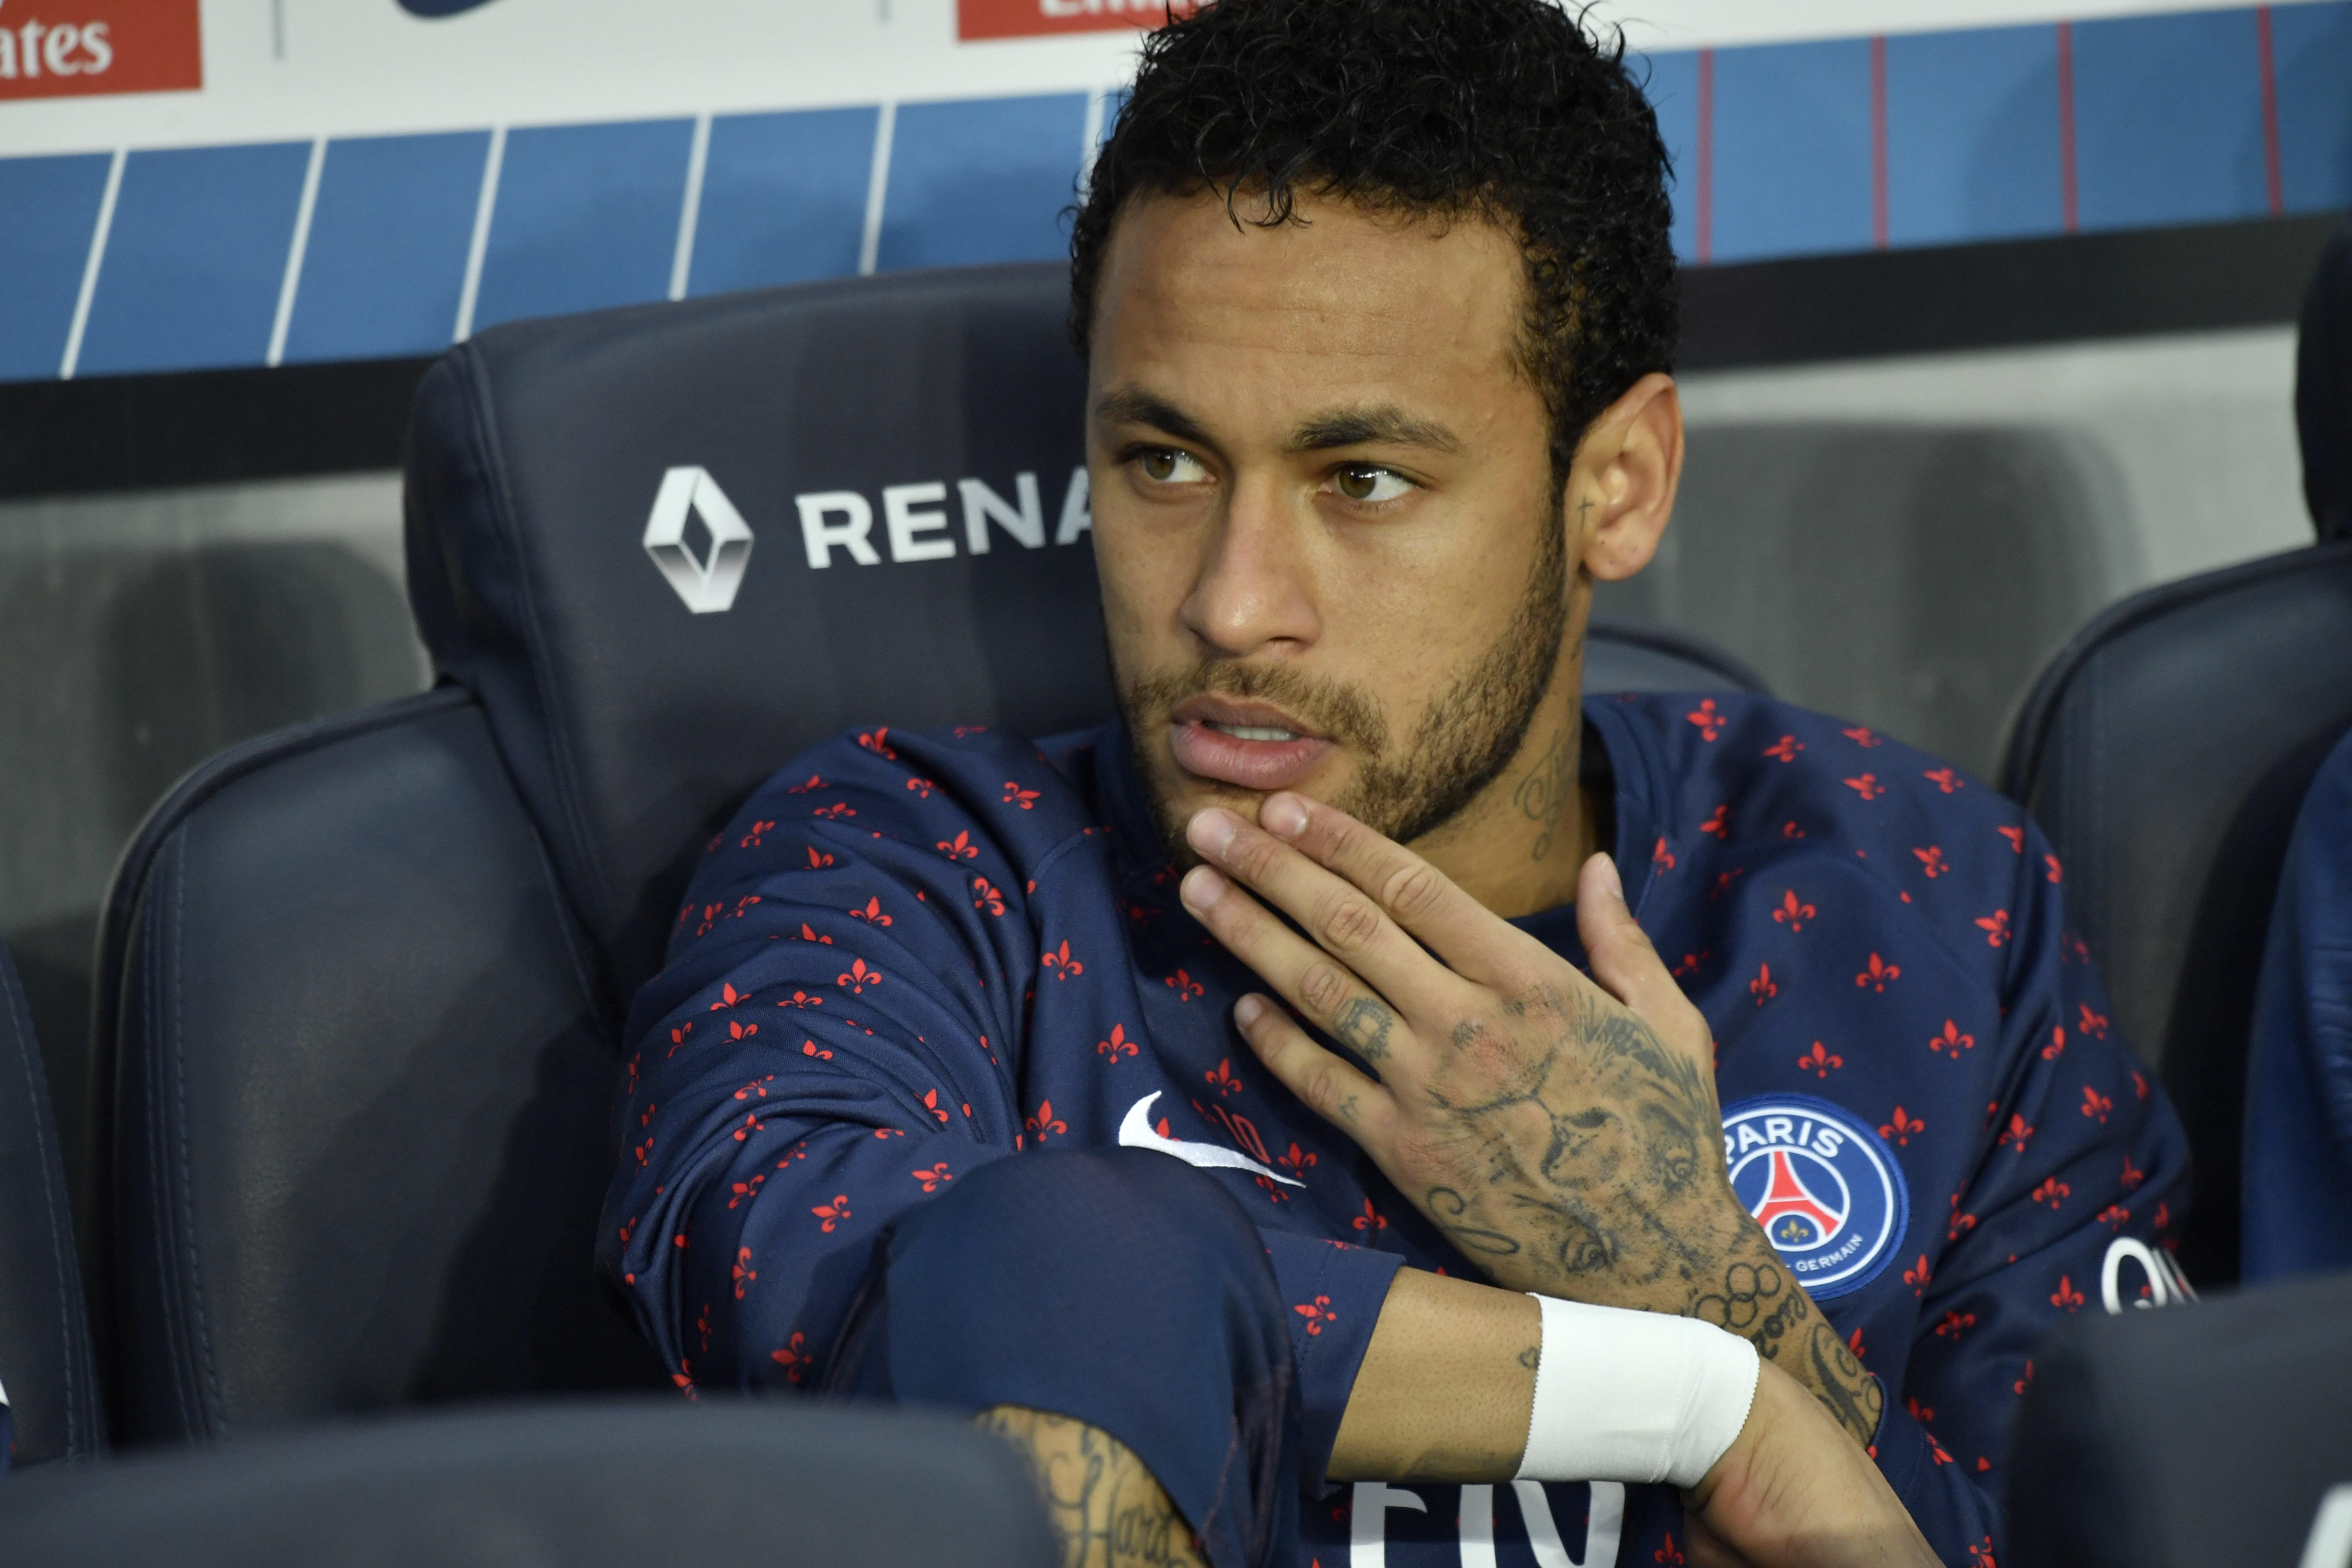 El Barça hauria rebutjat la contraoferta del PSG per Neymar